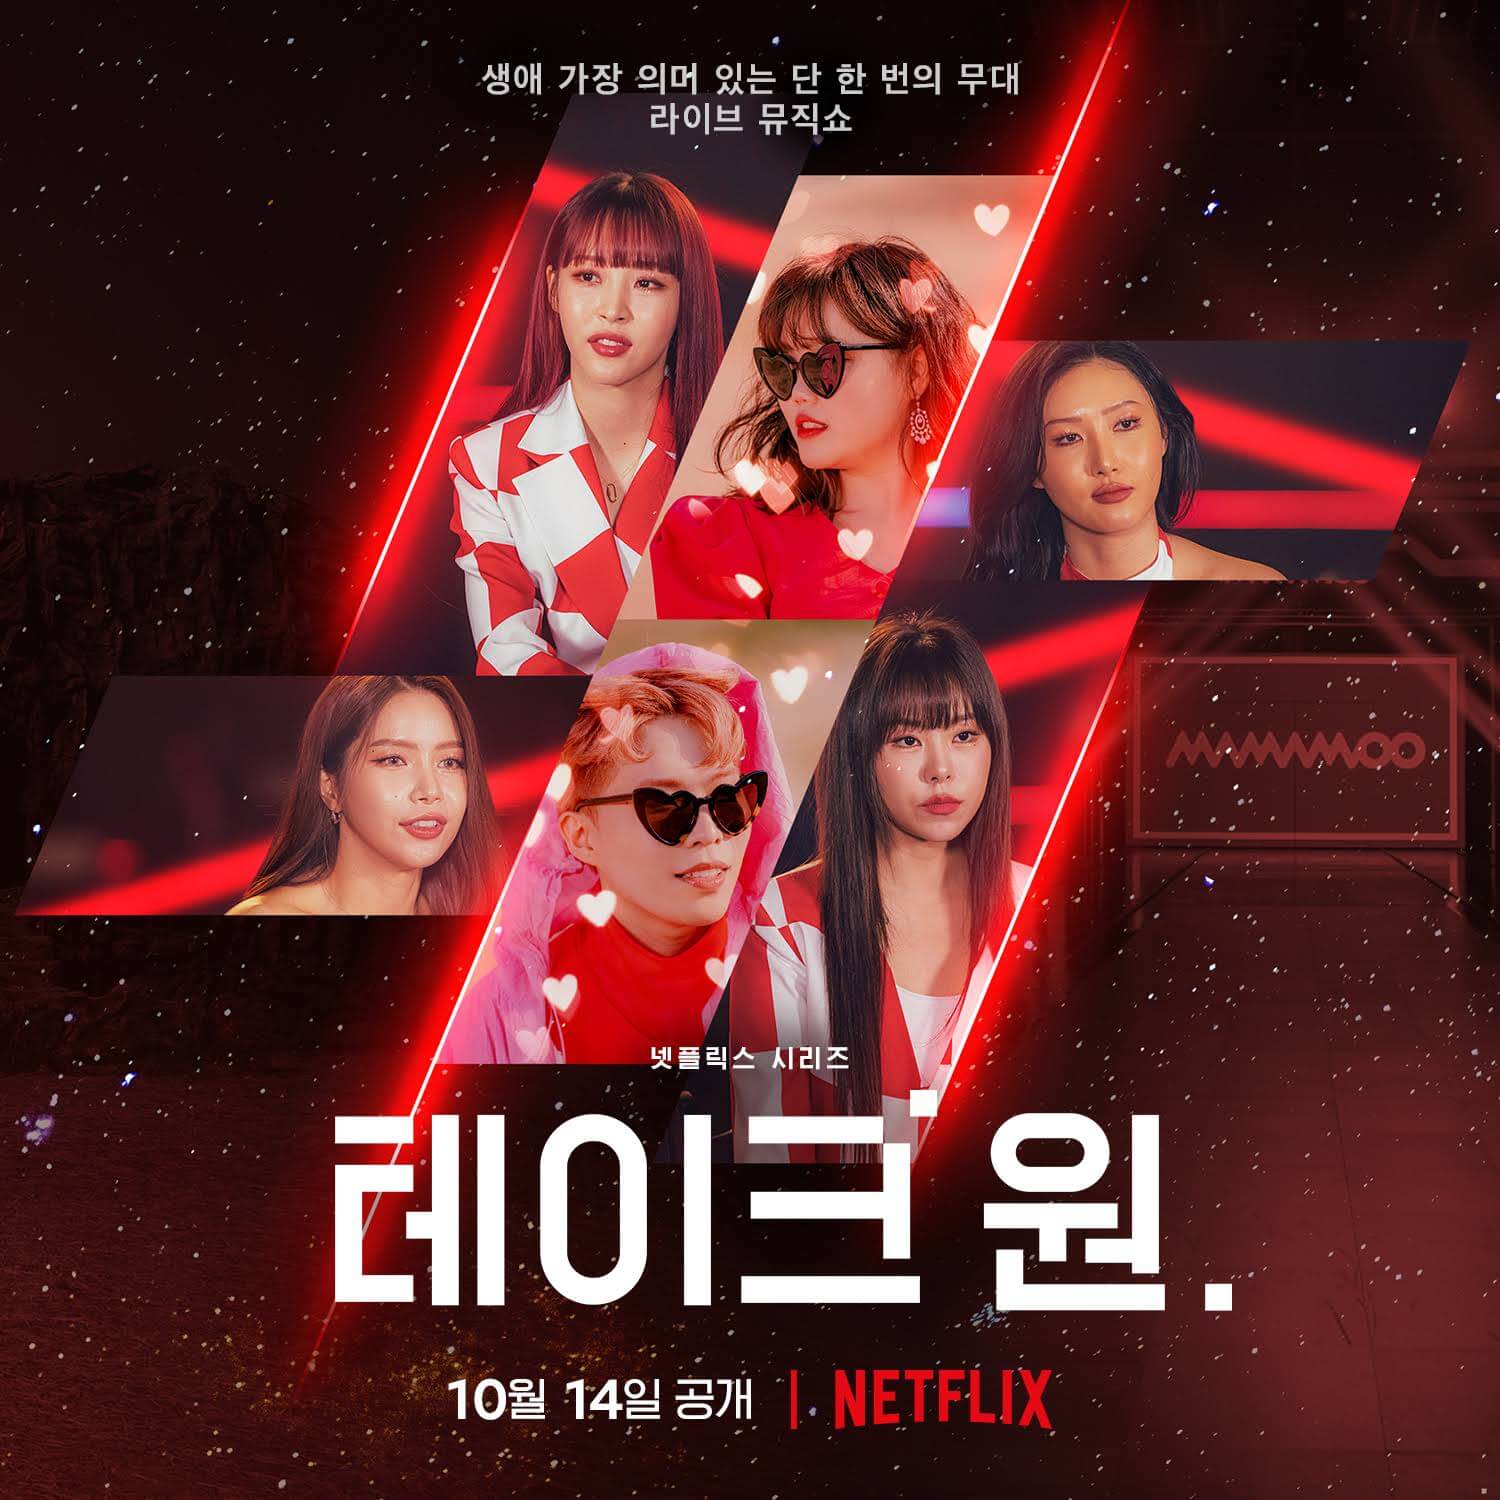 Lo spettacolo di varietà musicale coreano prende 1 in arrivo su Netflix nell'ottobre 2022 poster 2